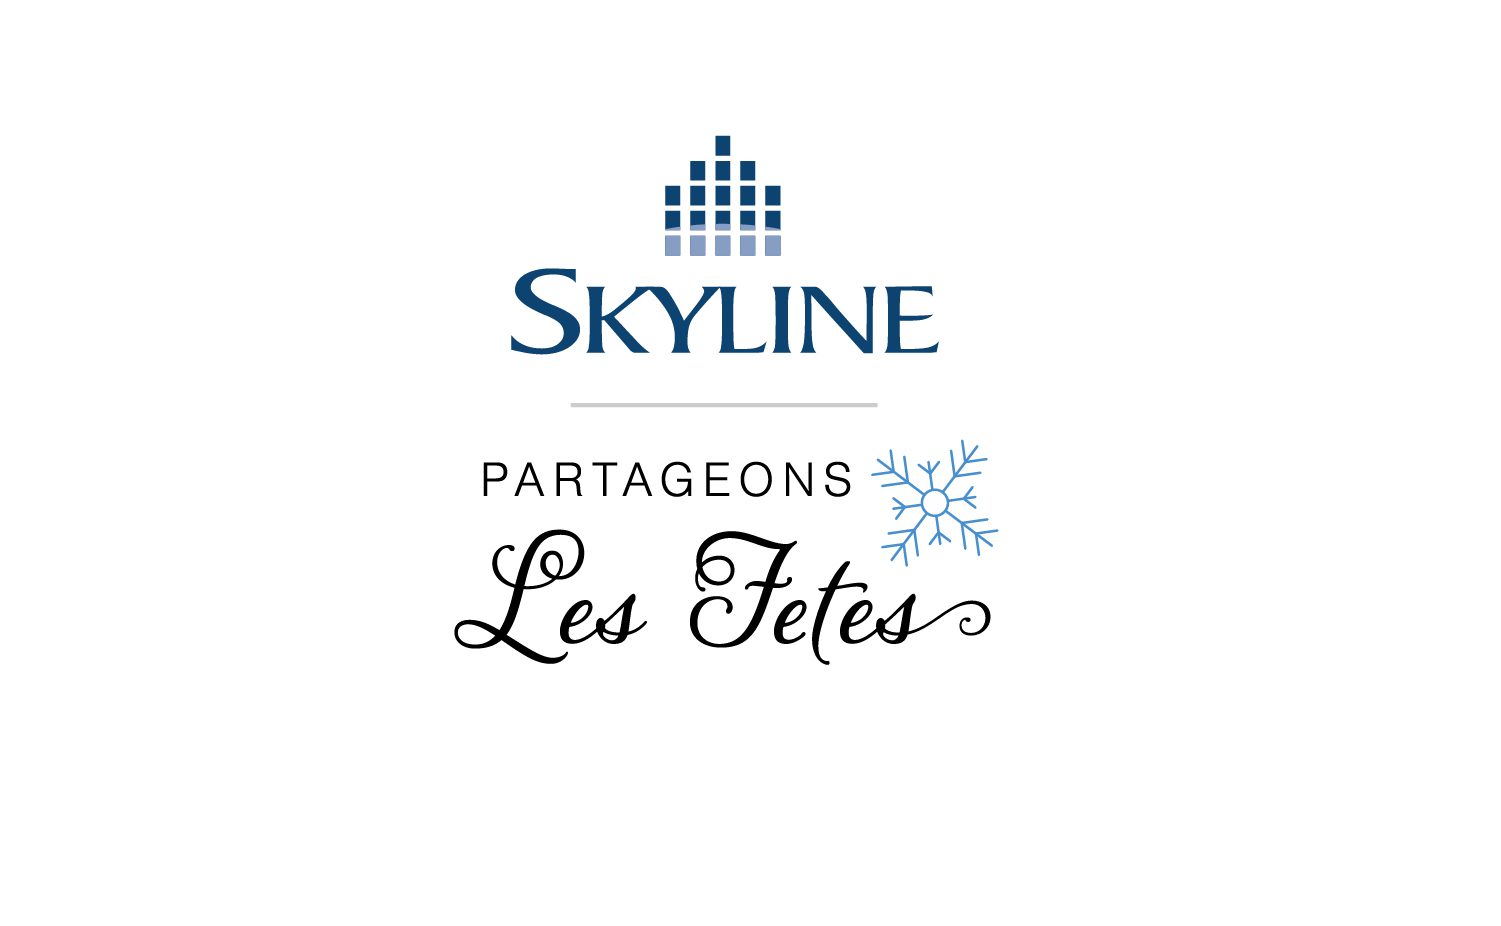 Skyline lance sa campagne de financement des fêtes pour aider les familles dans le besoin partout au Canada